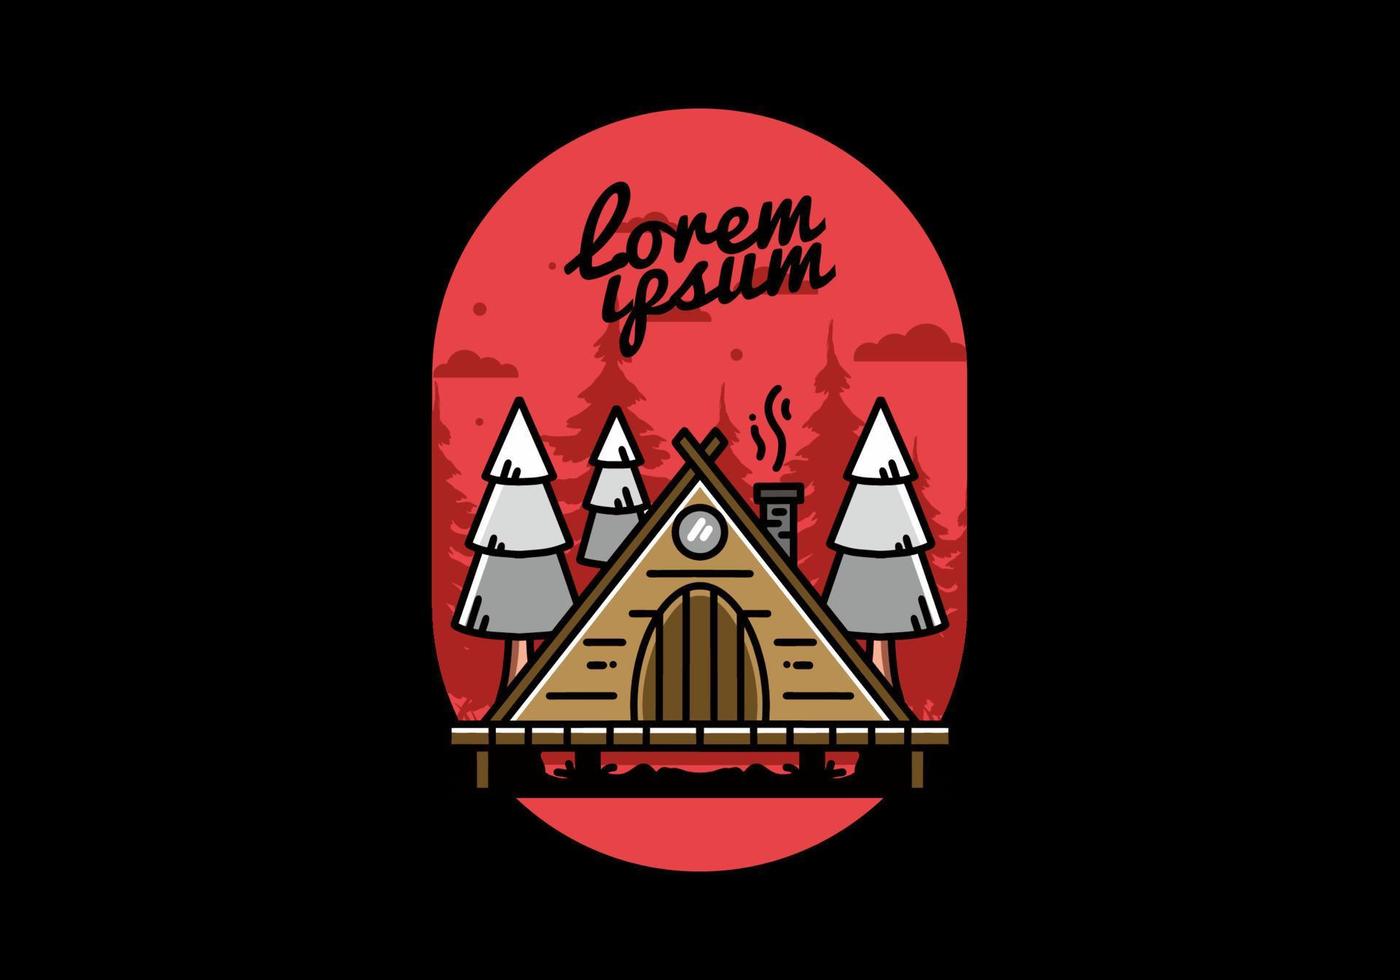 driehoek houten cabine tussen pijnboom haarlok illustratie ontwerp vector